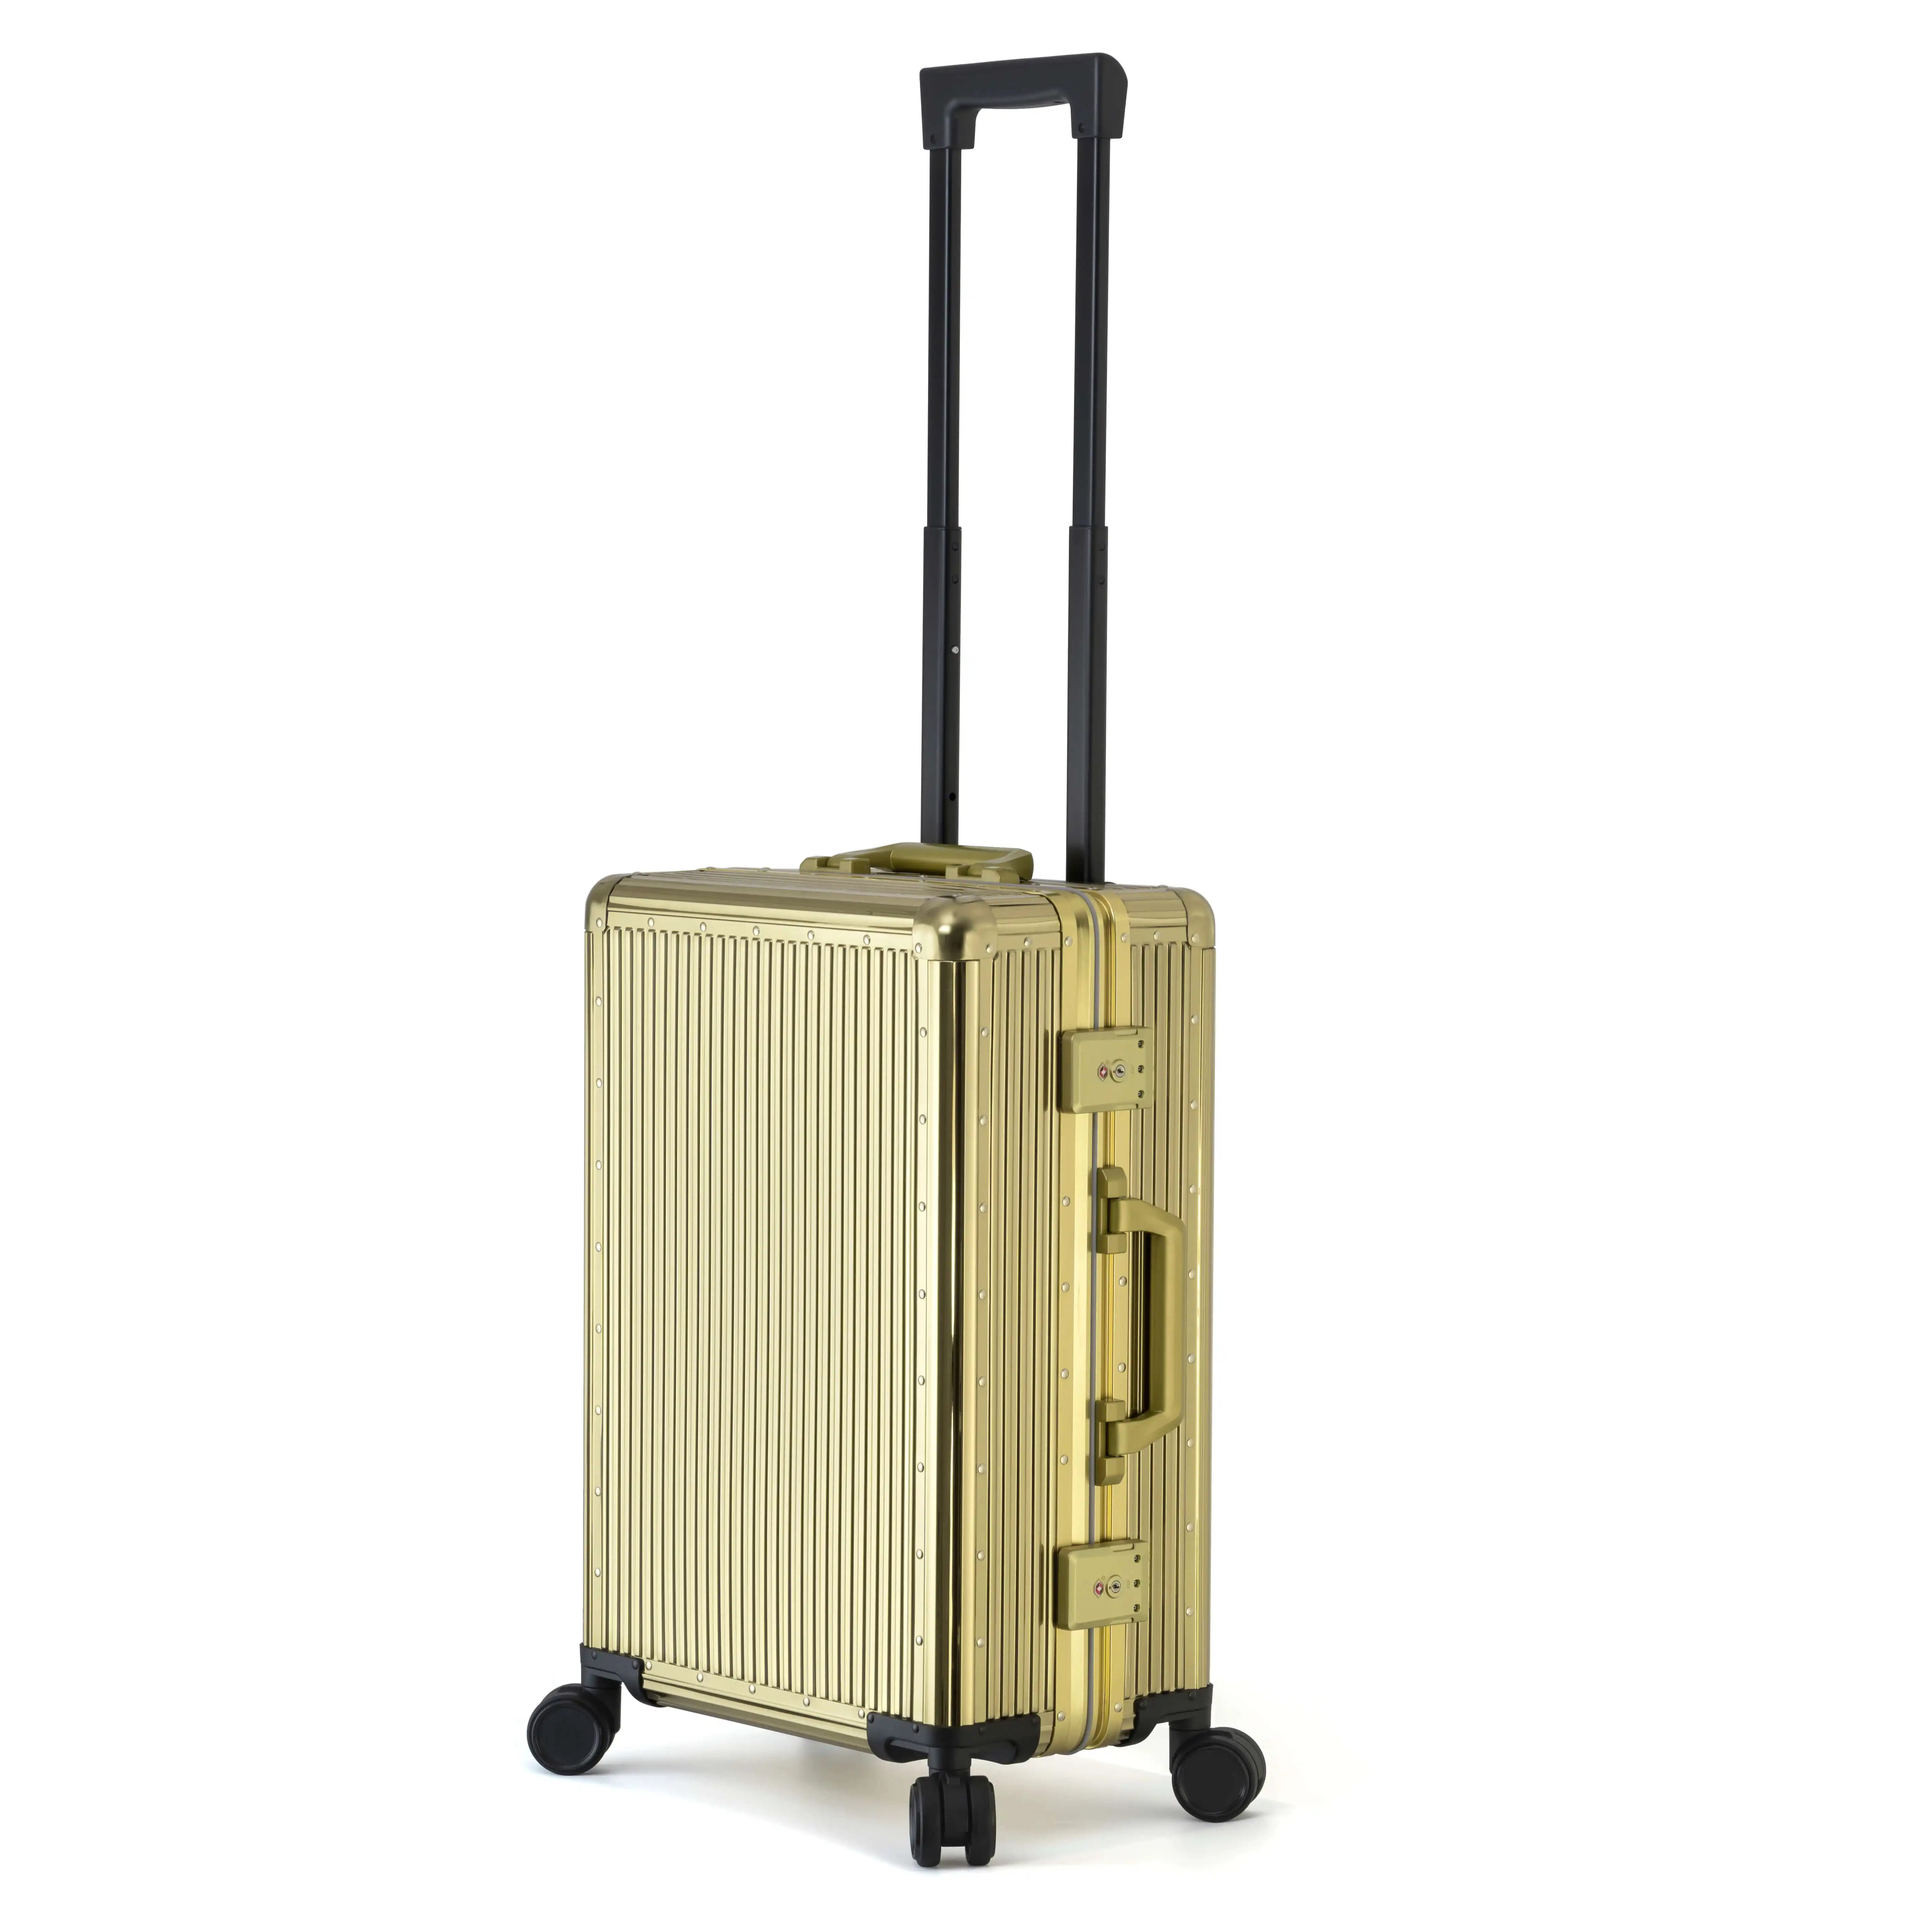 TSA kilit özel yapılmış valizler ile titanyum çelik haddeleme bagaj lüks sert bavul